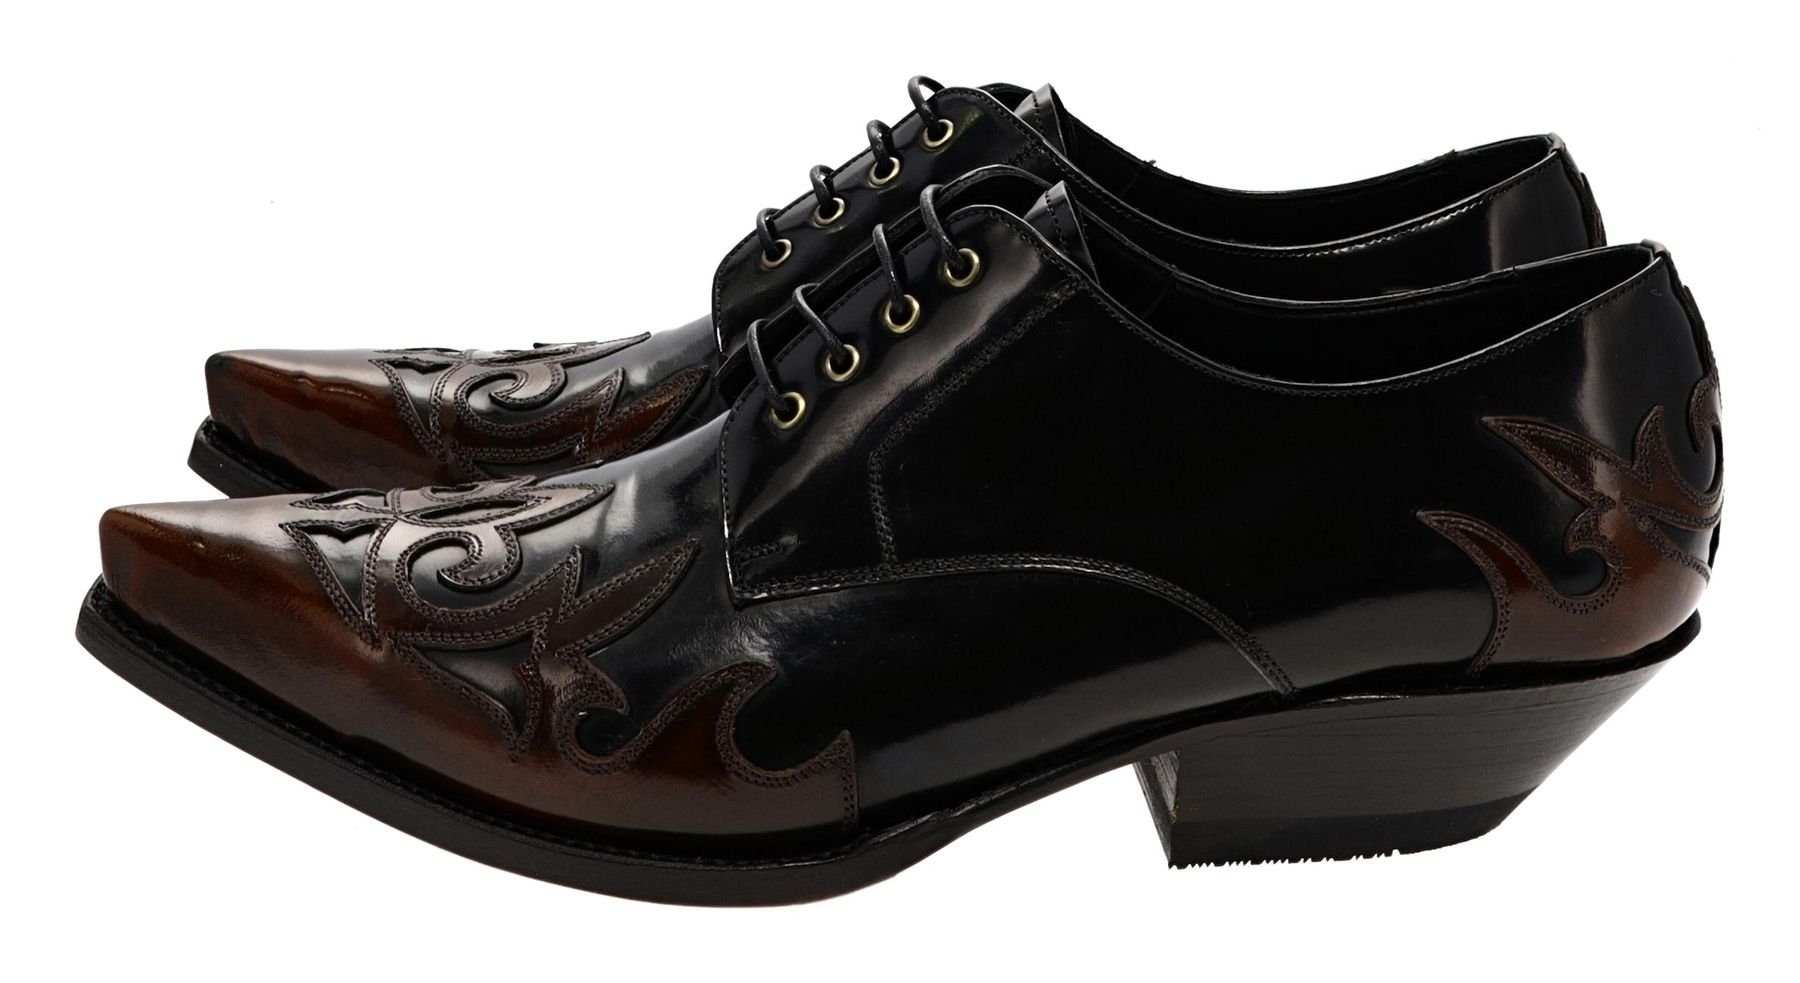 Schuhe Klassische Stiefeletten FB Fashion Boots Stiefelette ELOY Negro Burdeos Westernschuhe